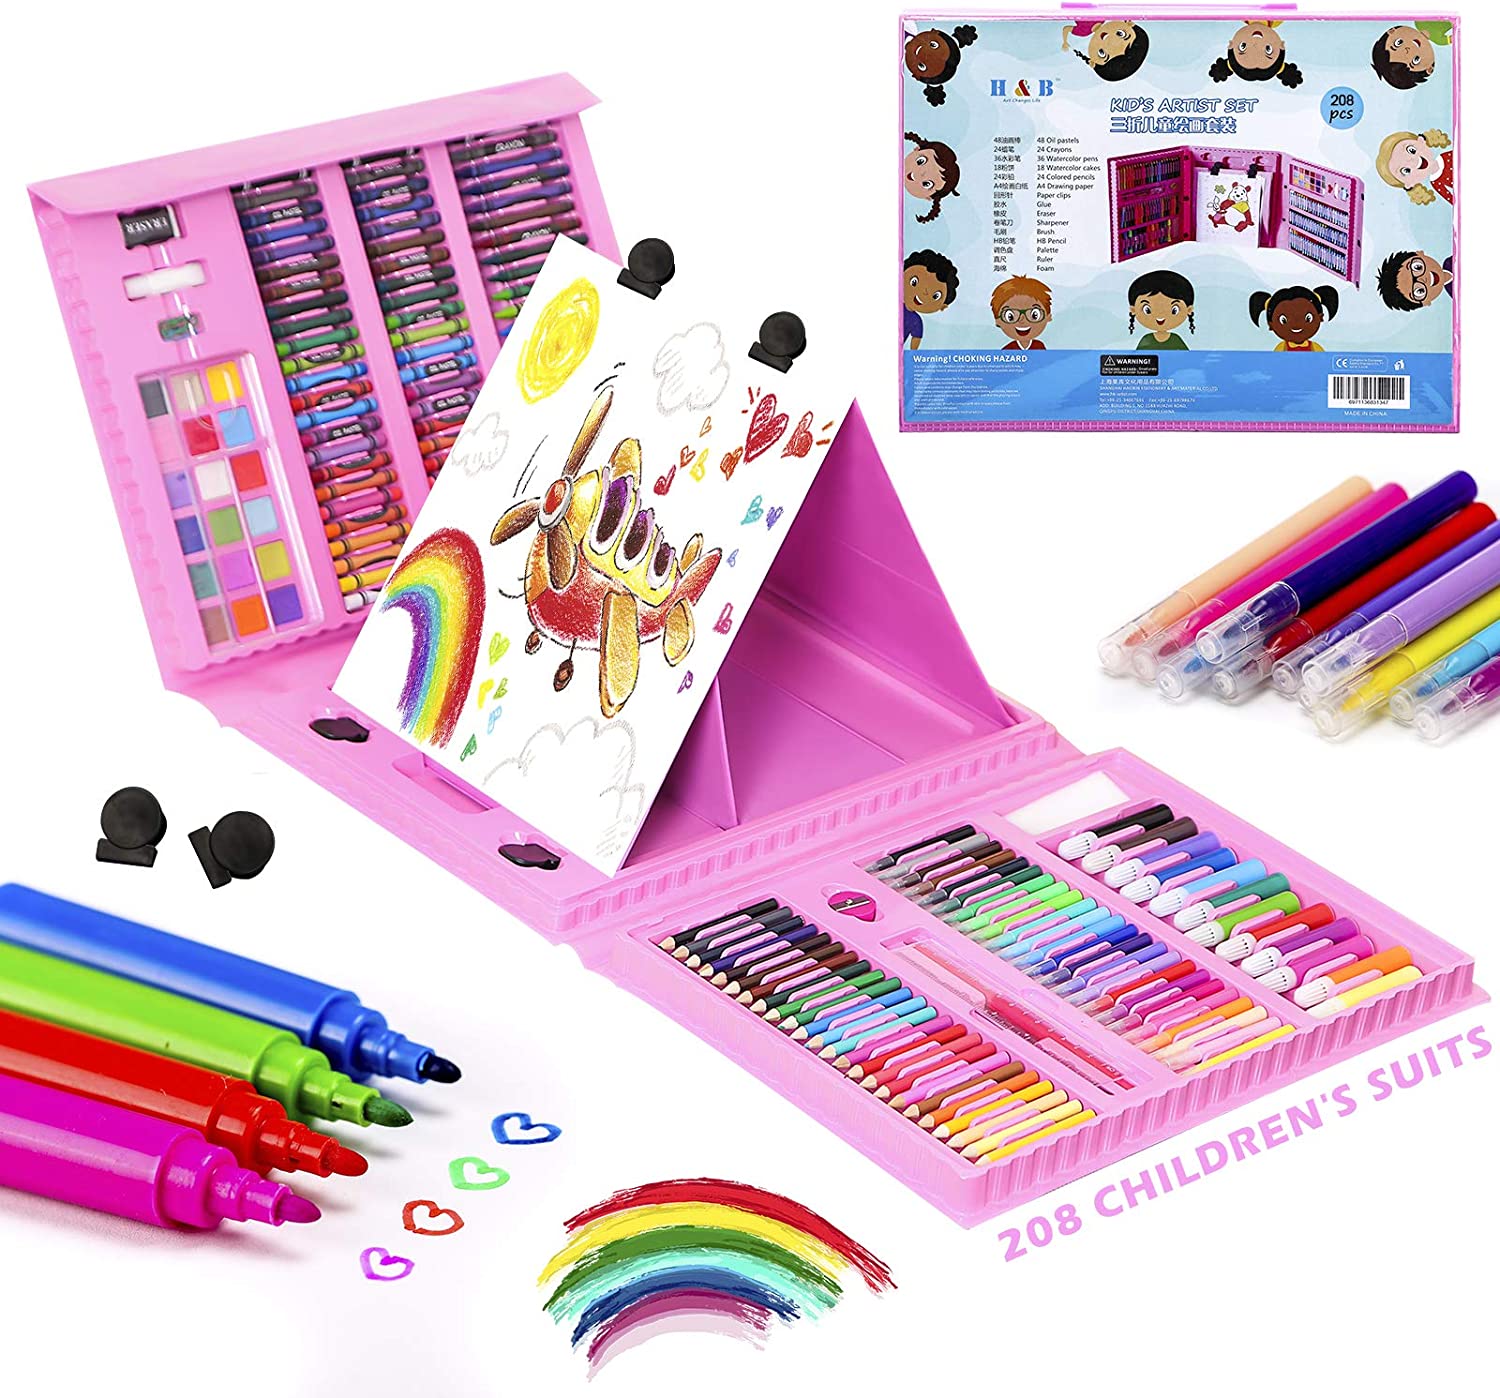 208Pcs Art Kit,Art Supplies Drawing Kits,Arts and Crafts Supplies